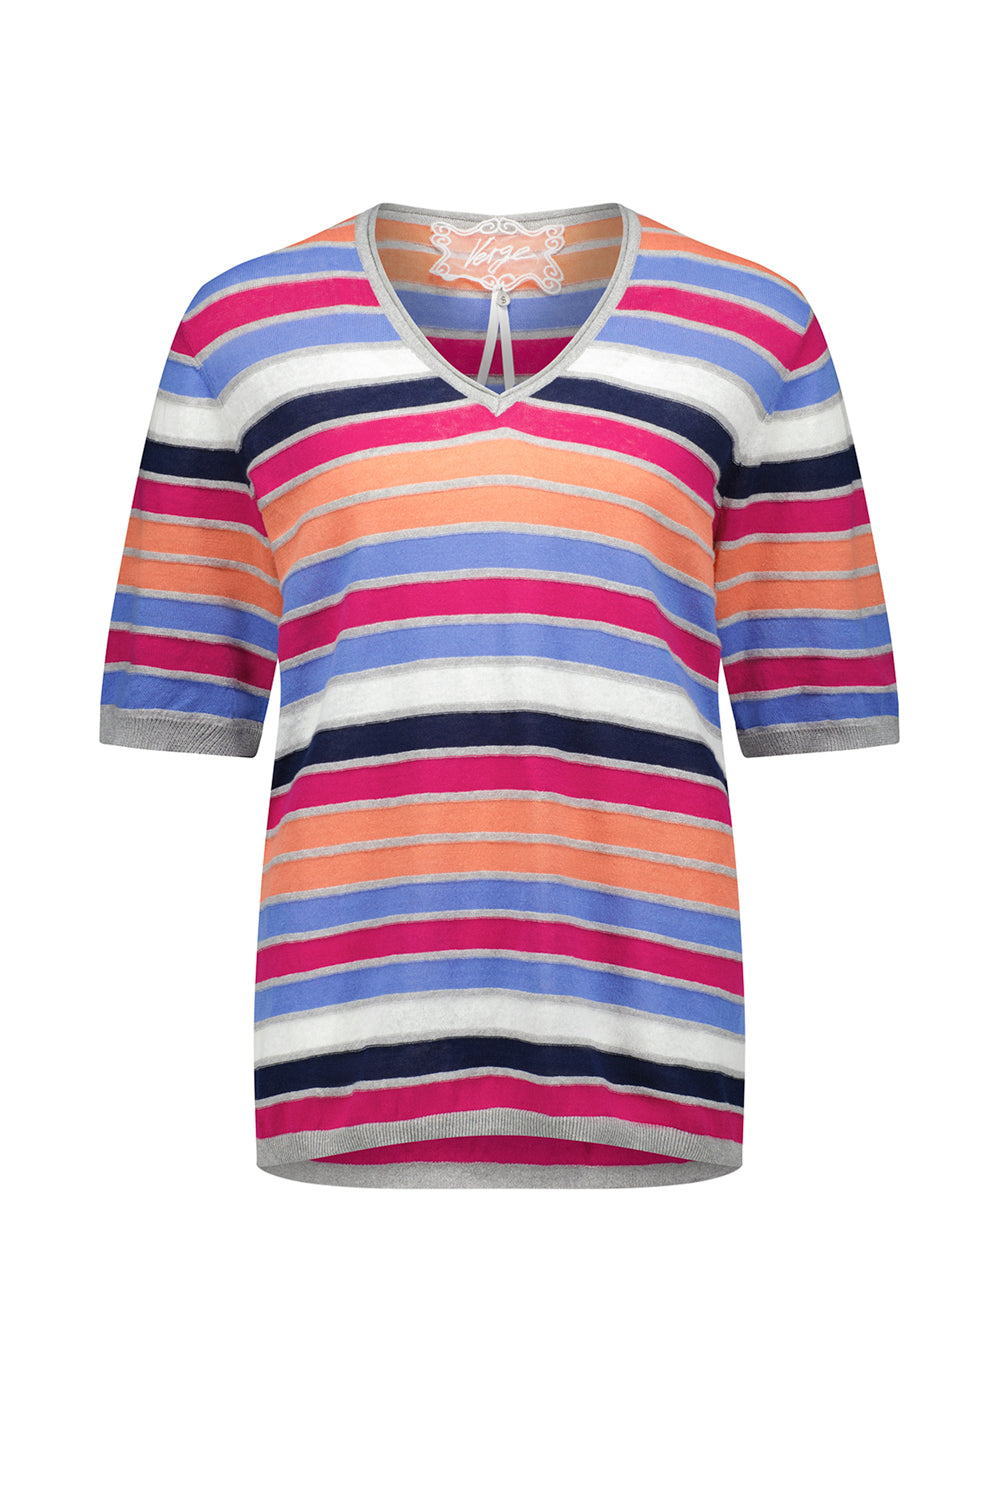 Drift Sweater - Multi Stripe - VERGE